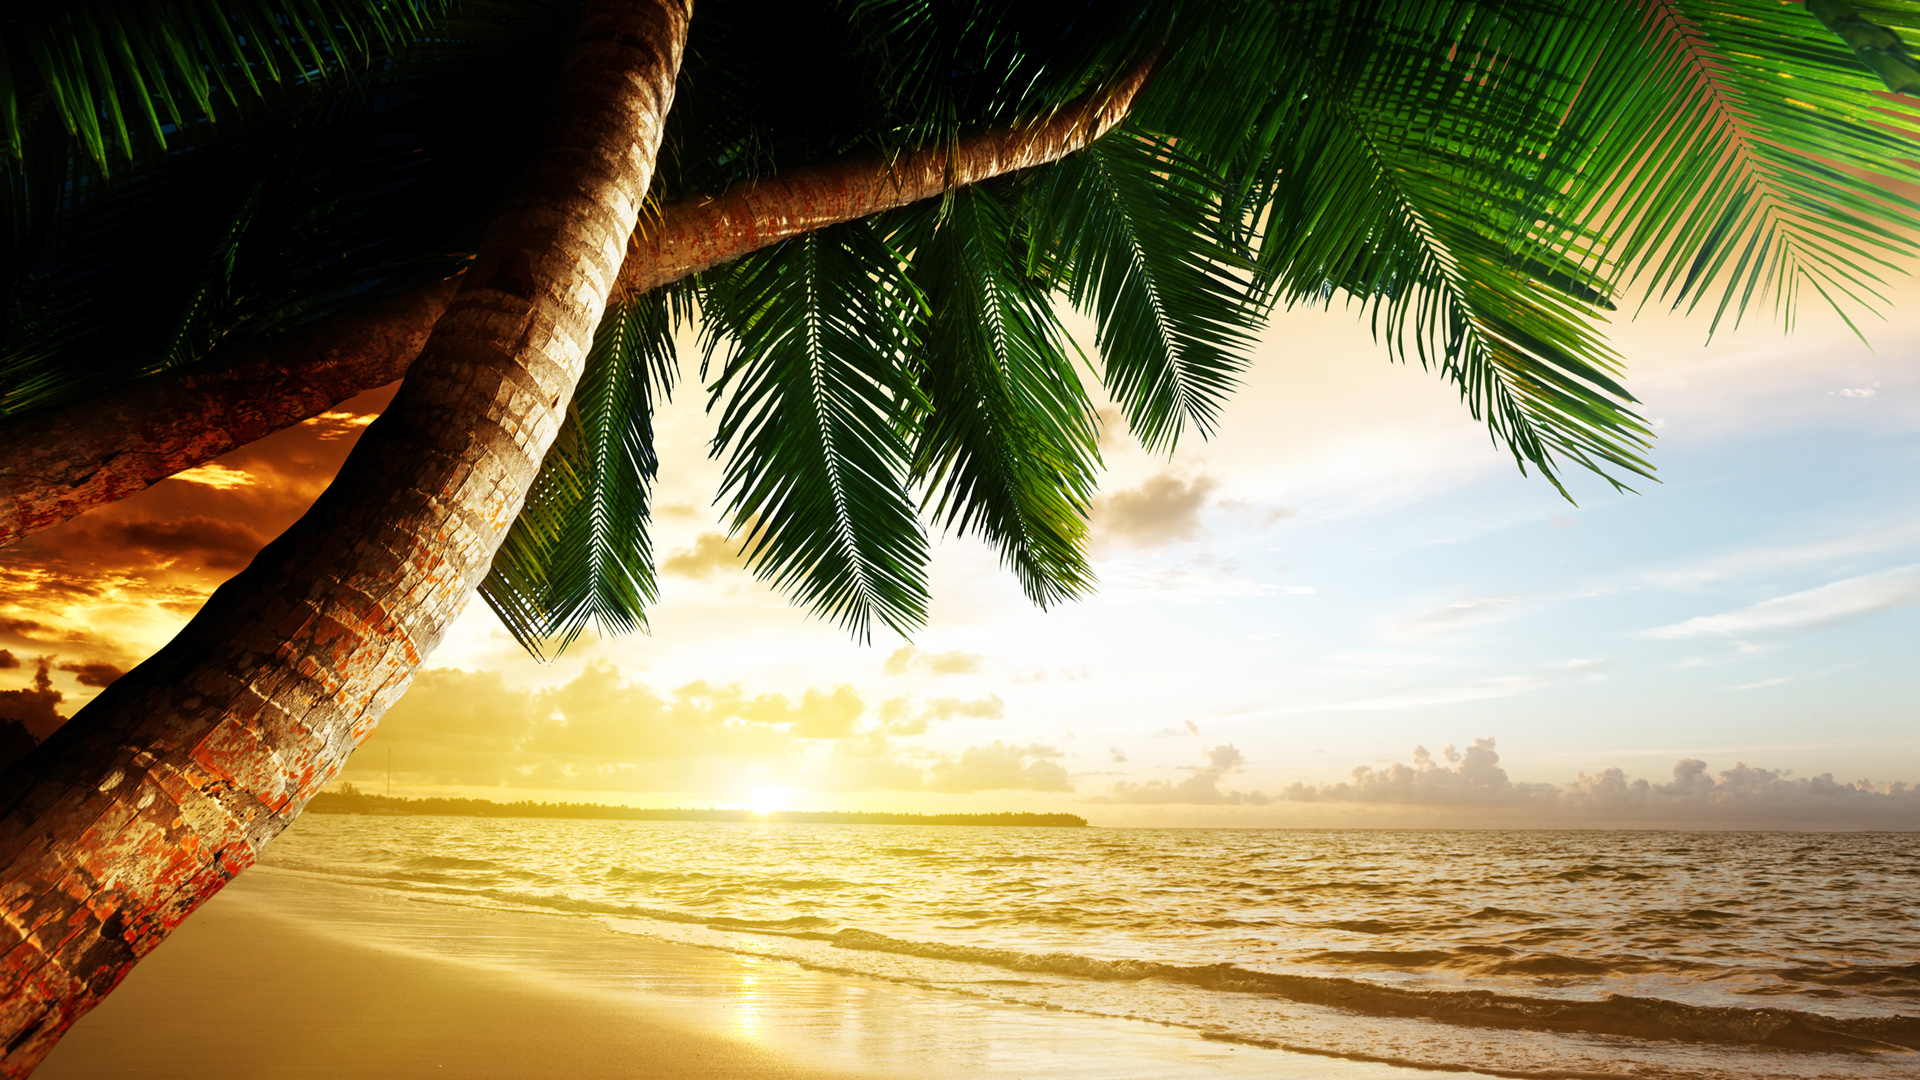 漂亮的海滩椰树风景桌面壁纸